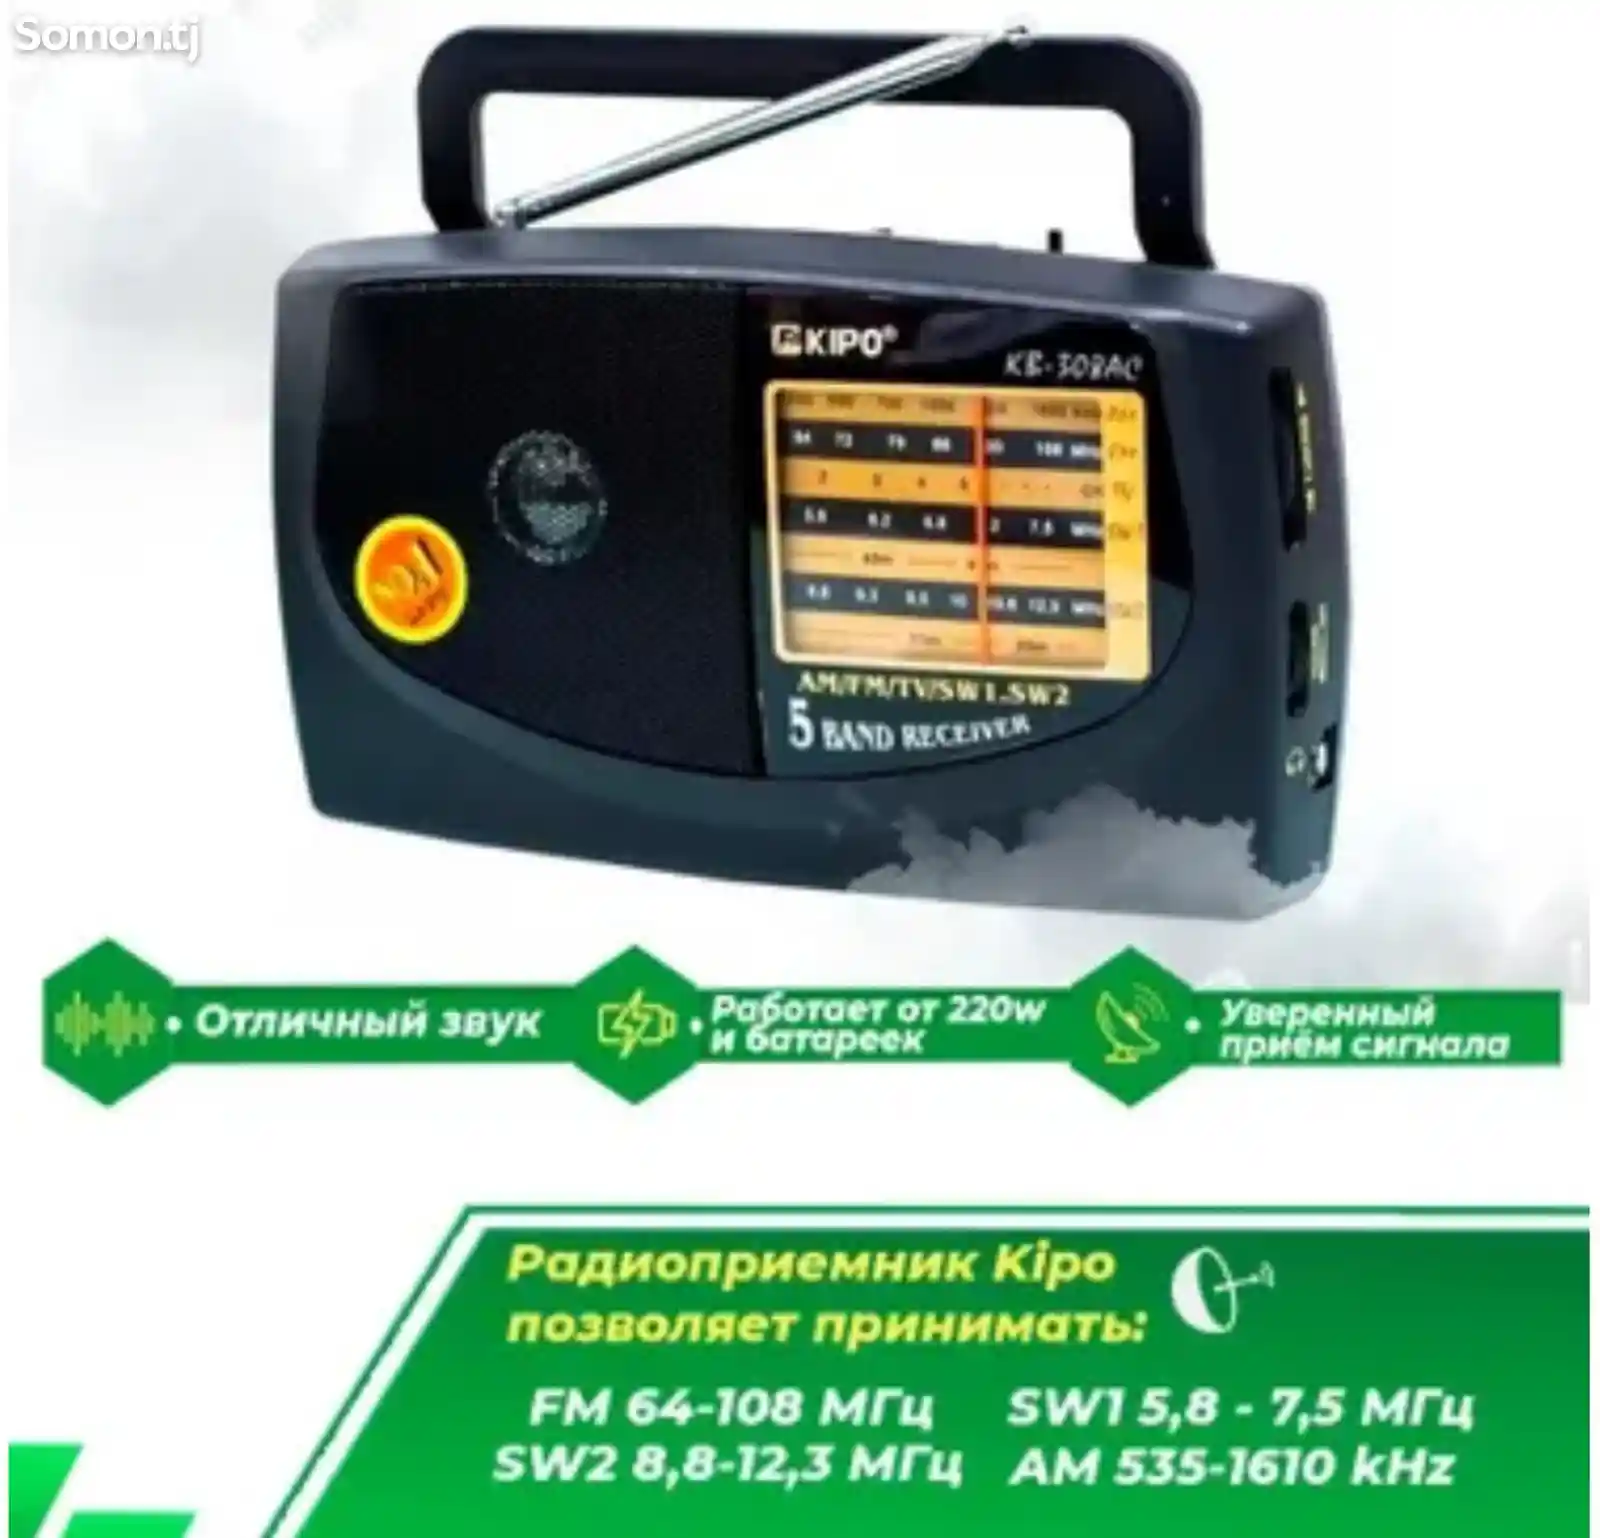 Переносной радиоприемник Kipo Kb-308Ac-1